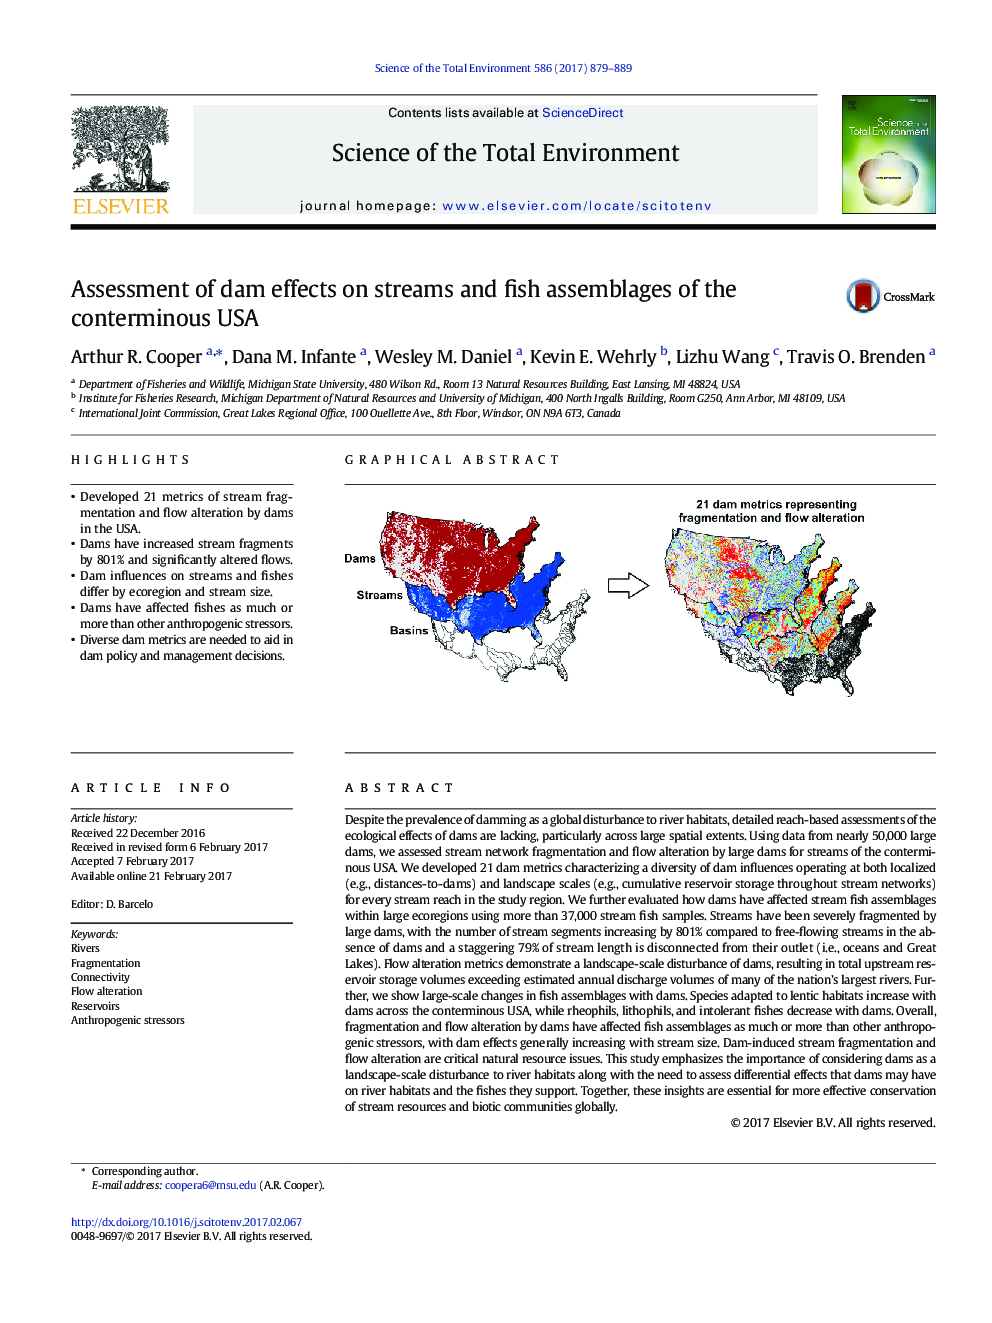 ارزیابی اثرات سد بر جریان ها و مجموعه های ماهی ایالات متحده آمریکا 